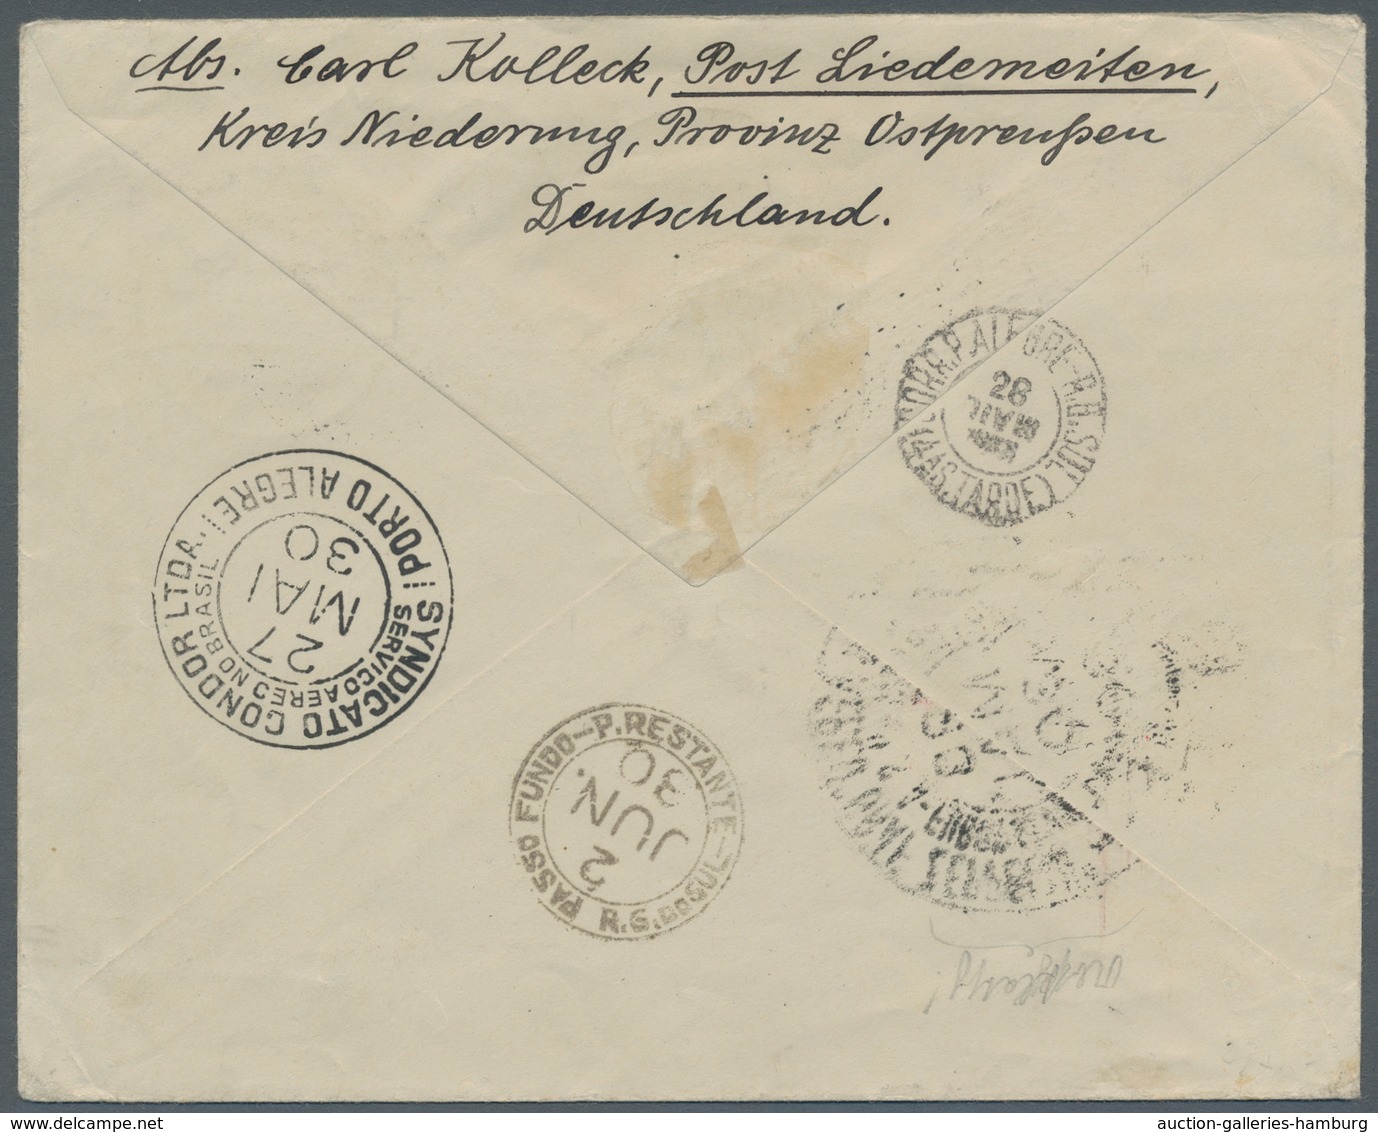 Zeppelinpost Deutschland: 1930 - SAF, Mit 4 RM SAF Frankierter Brief Mit Auflieferung Friedrichshafe - Airmail & Zeppelin